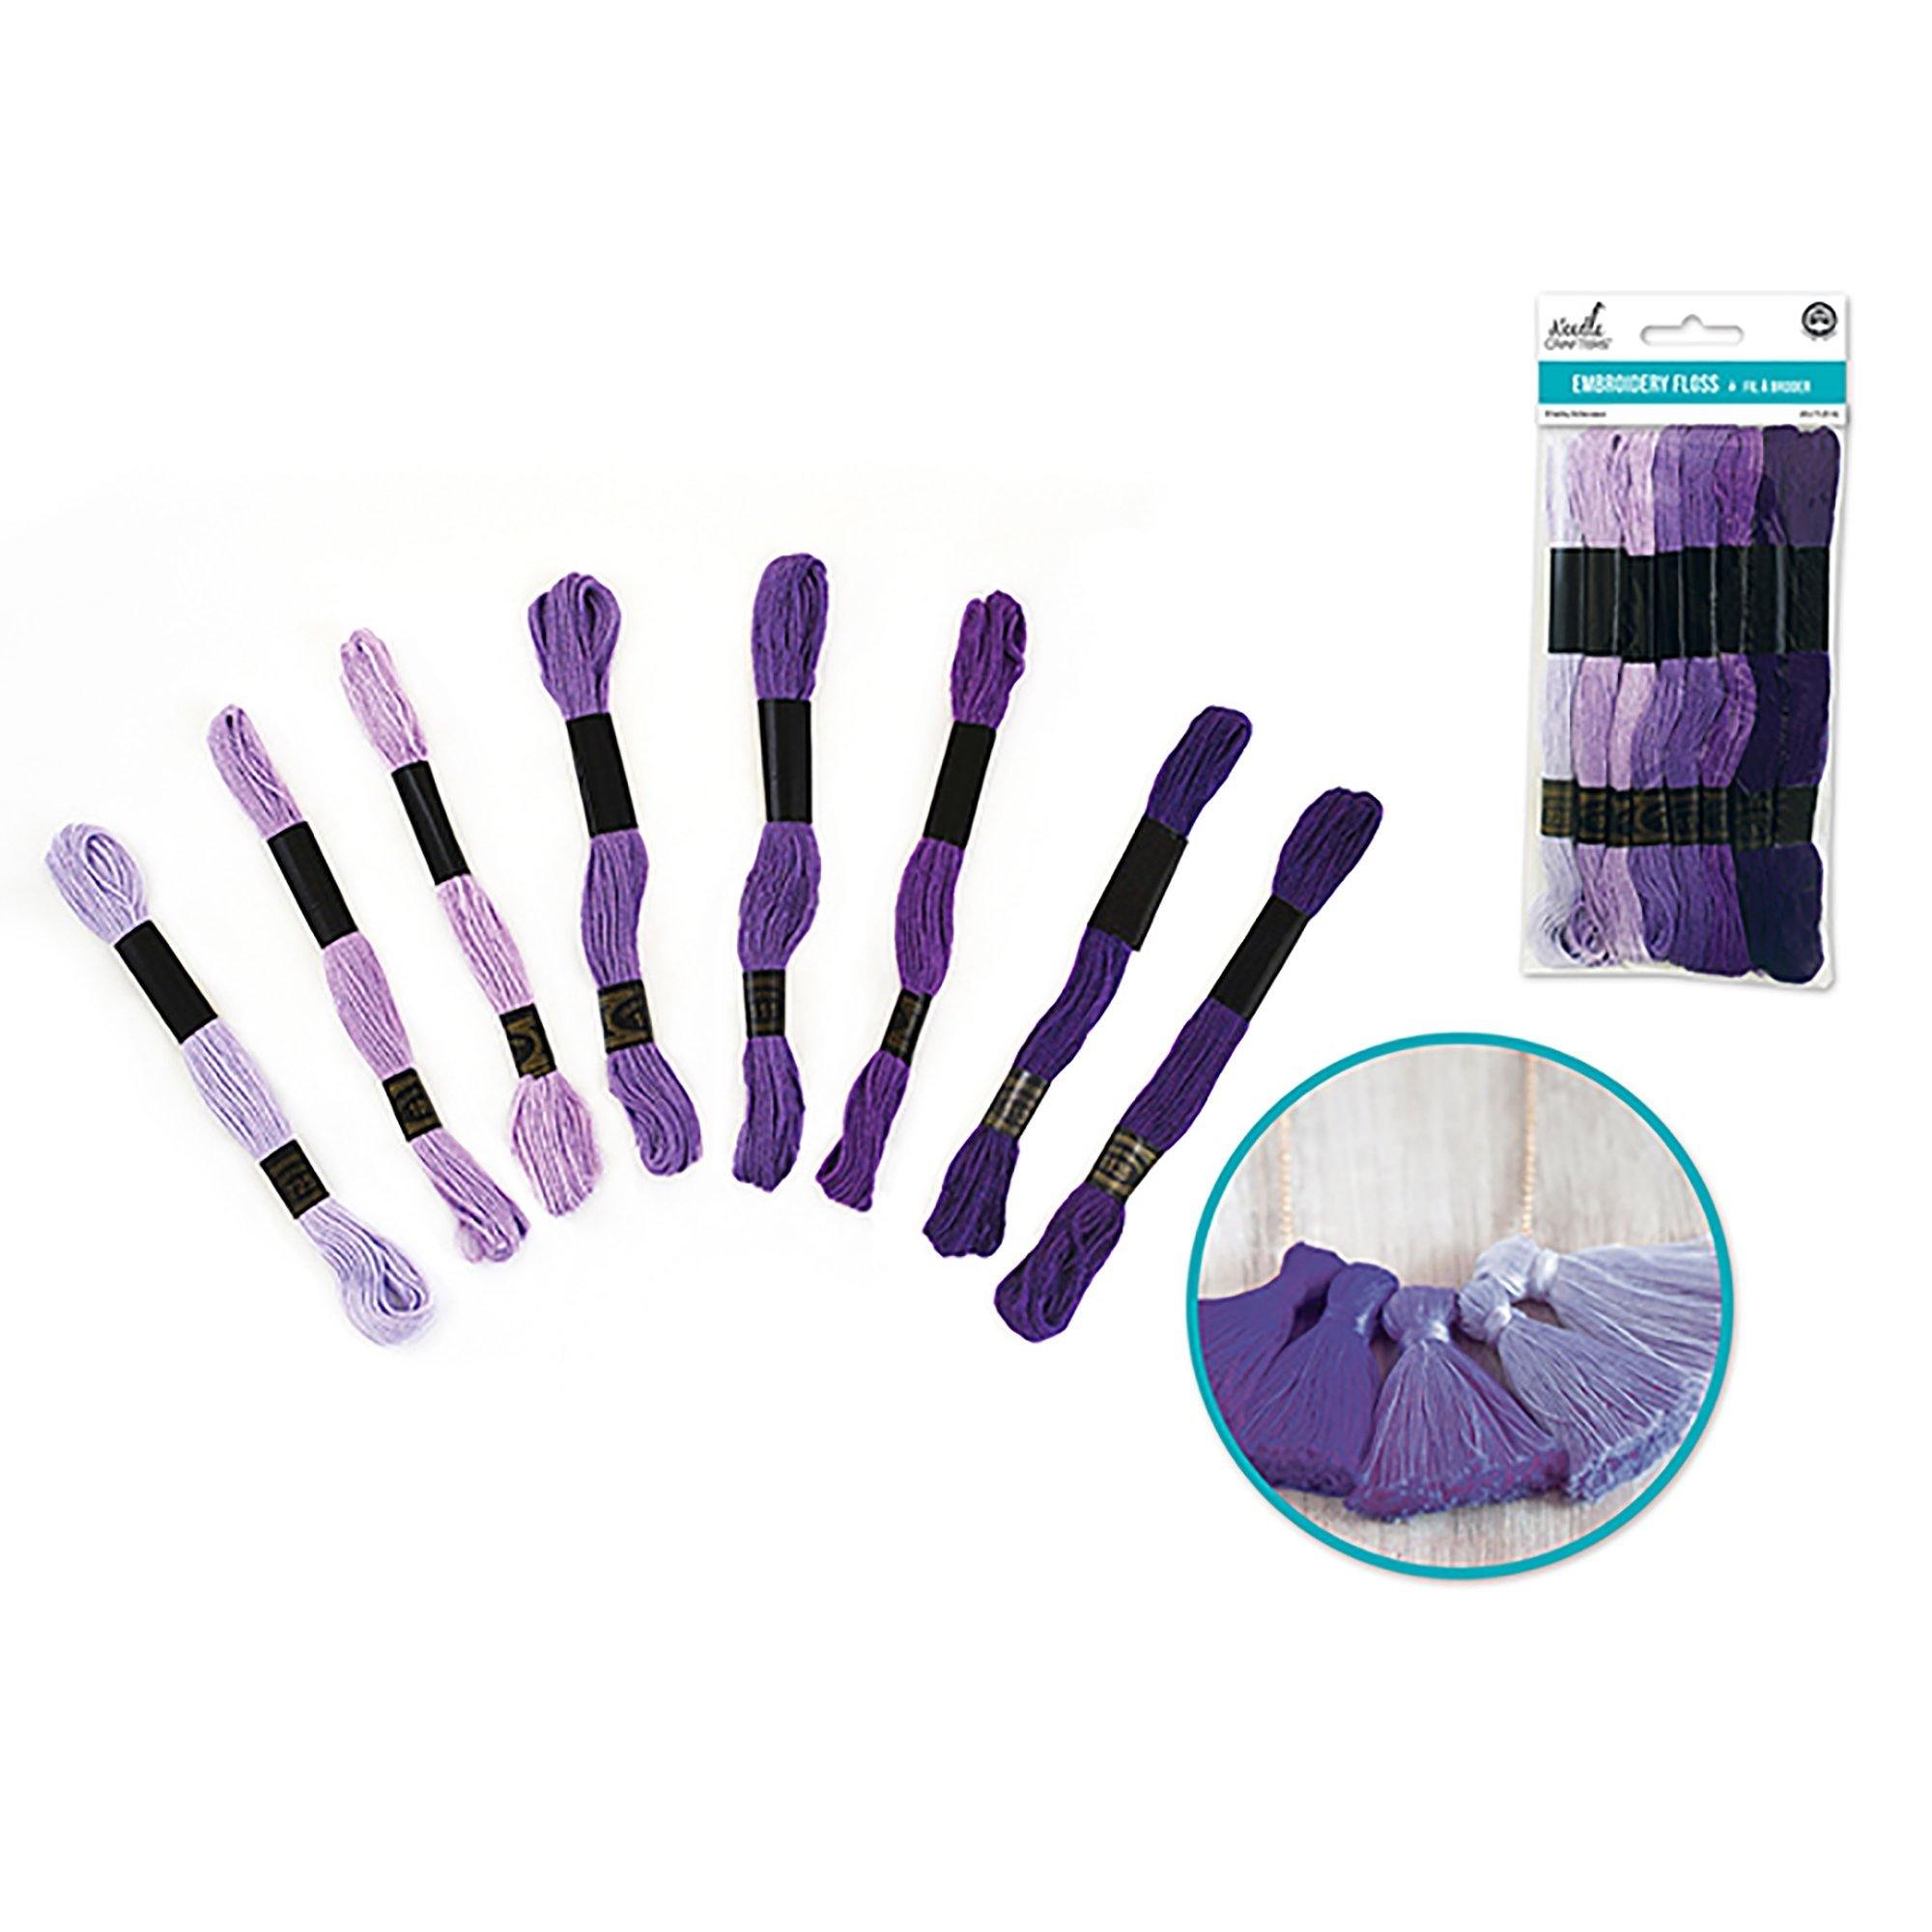 Lavender Dreams Needlecrafters: 8M Cotton Embroidery Floss 8 Hanks/Pkg - Dollar Max Dépôt